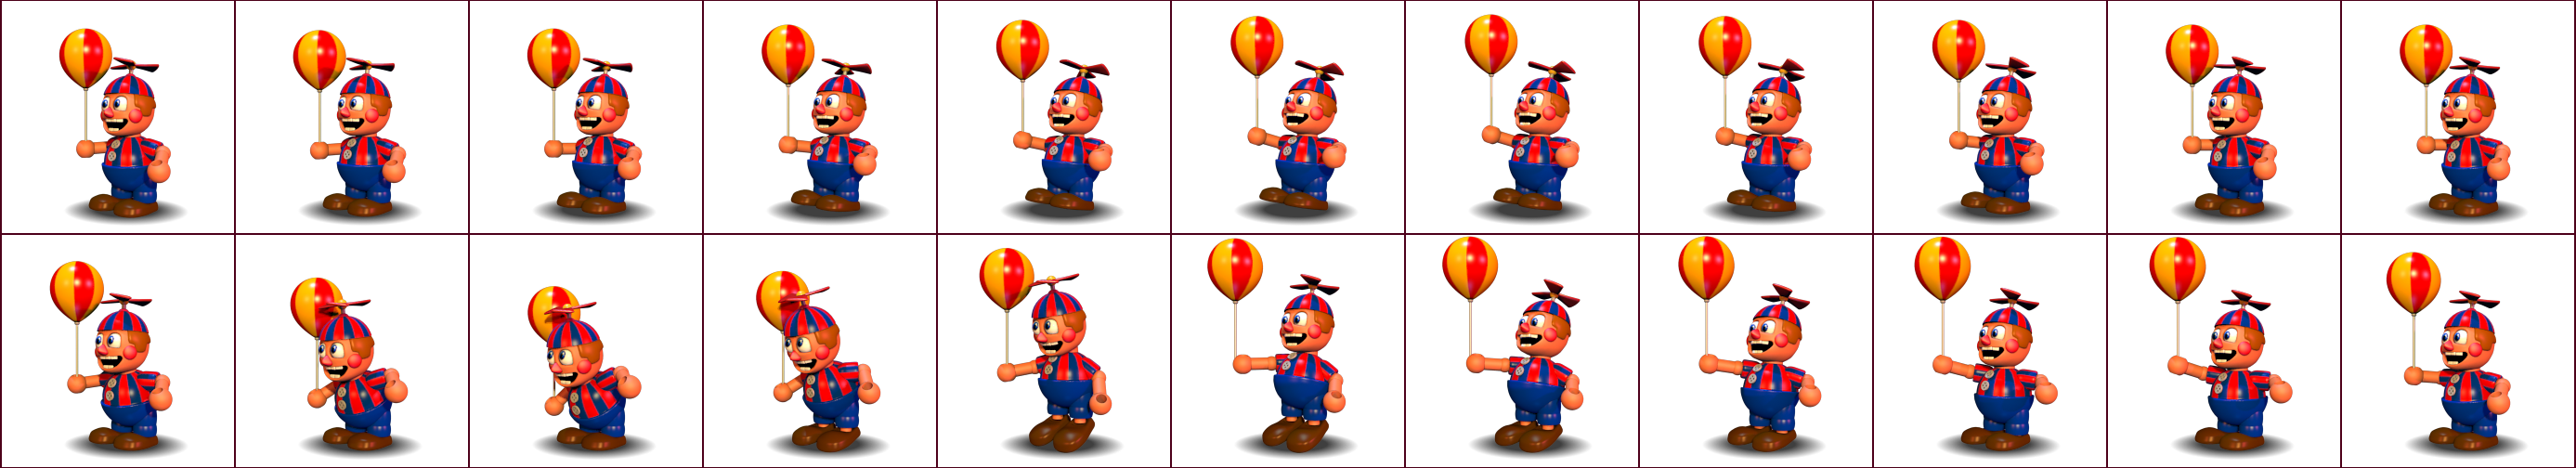 FNaF World - Balloon Boy